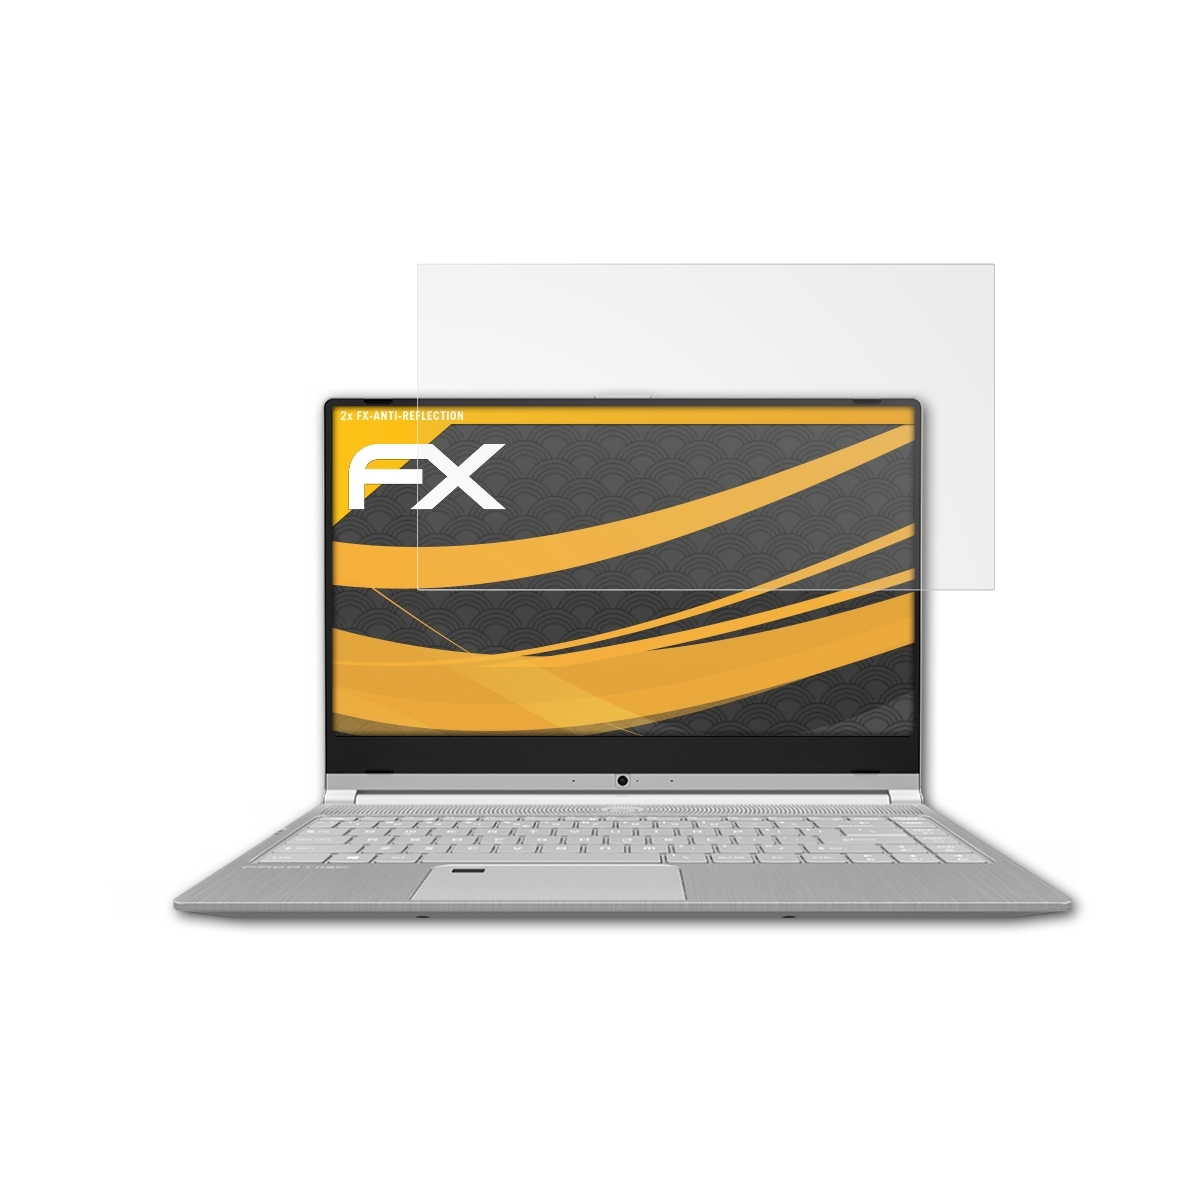 ATFOLIX 2x MSI FX-Antireflex Prestige Displayschutz(für 14)